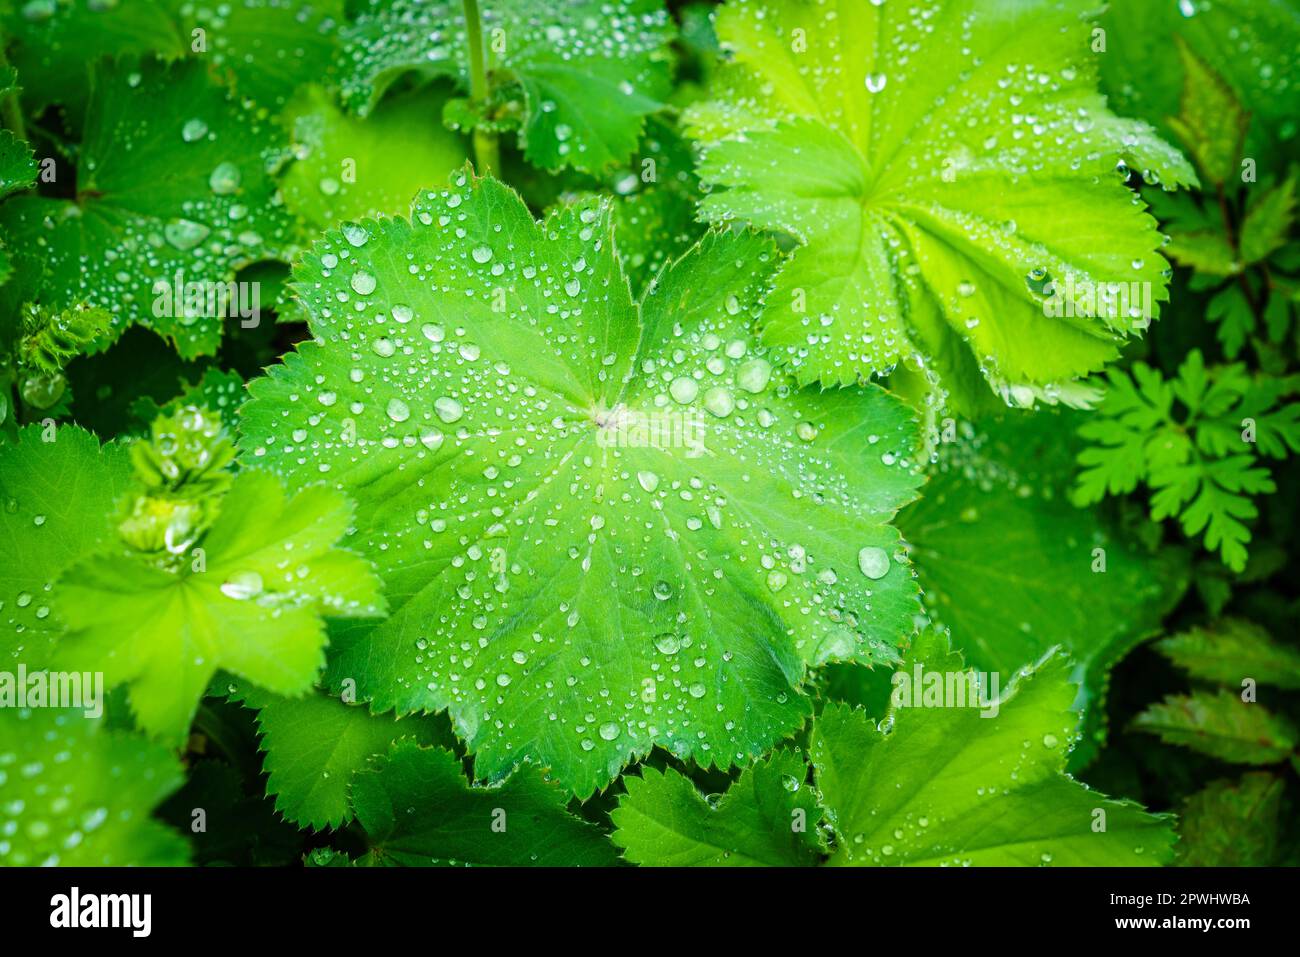 Image en gros plan de feuilles de manteau de Ladys vert frais (Alchemilla vulgaris) recouvertes de gouttelettes de rosée Banque D'Images